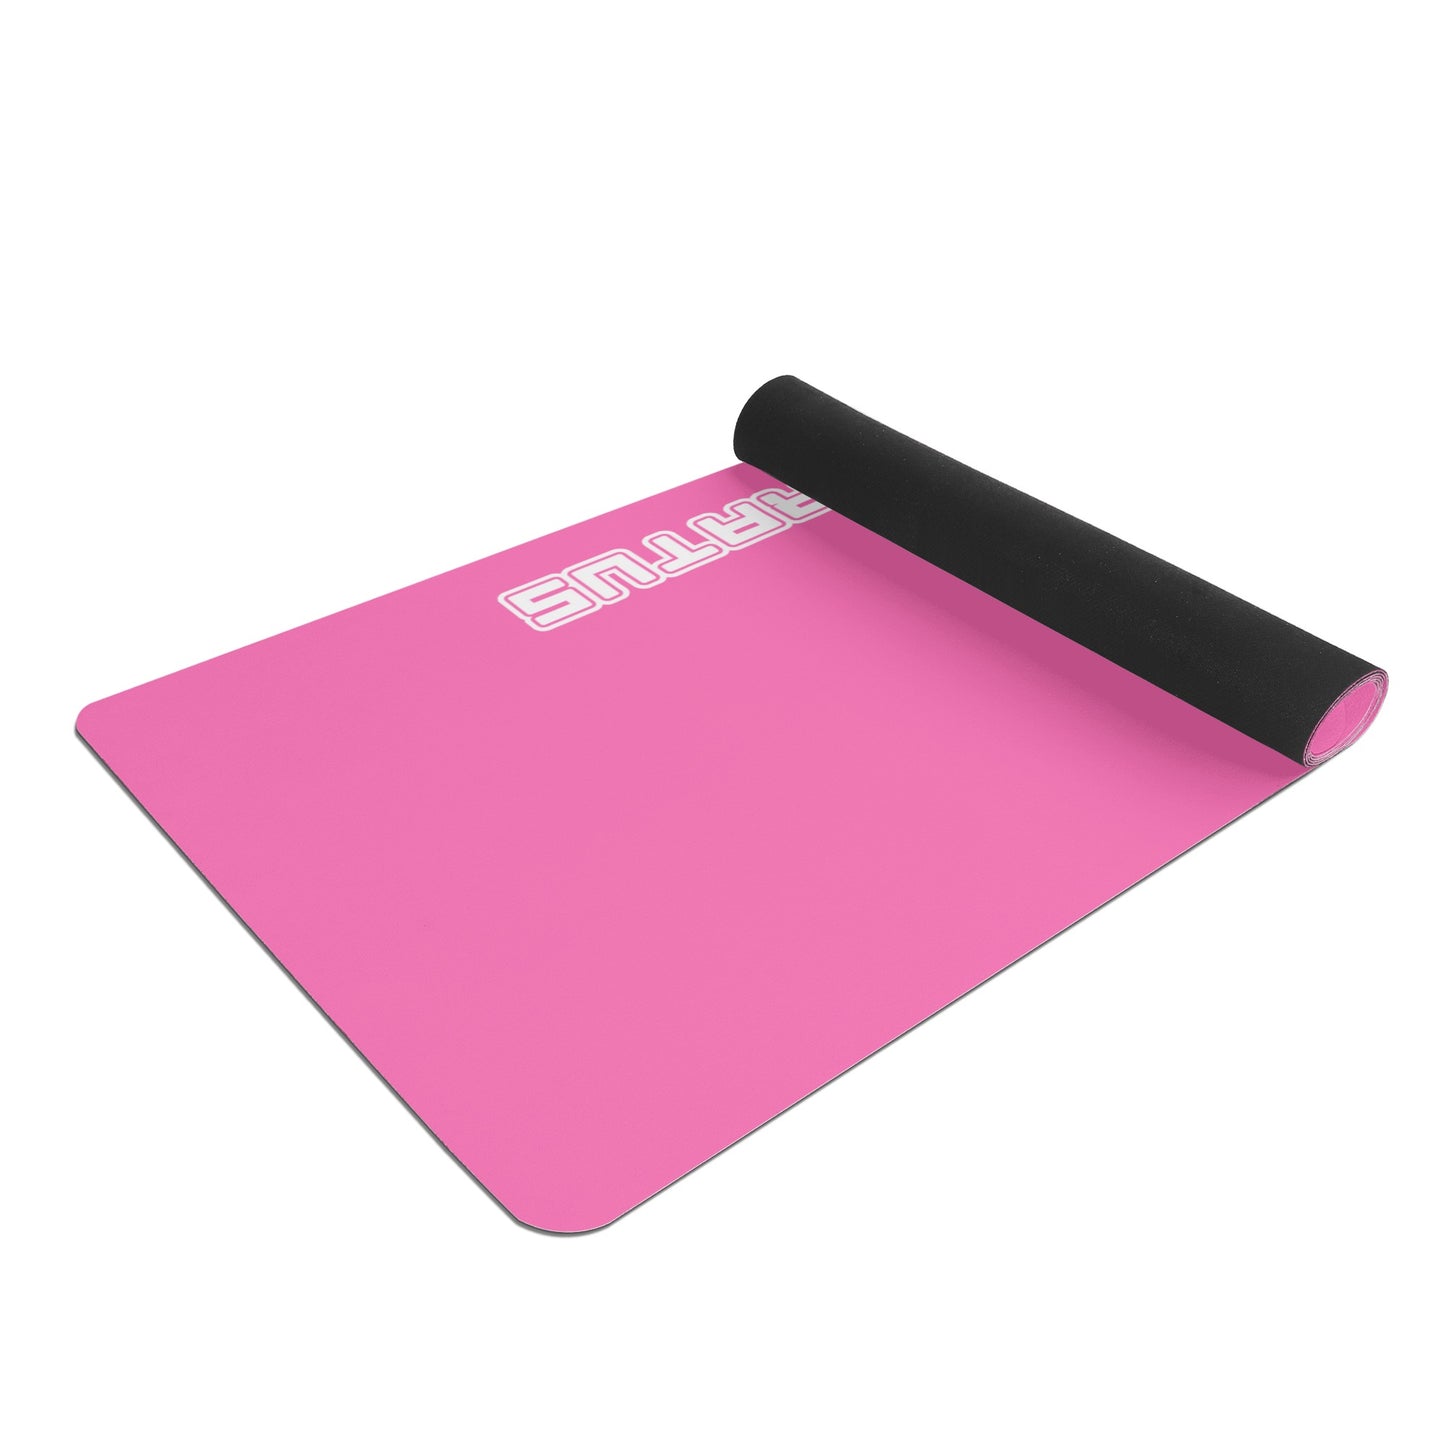 
                  
                    A.A. Hot Pink Navy 4mm Rubber Yoga Mat
                  
                